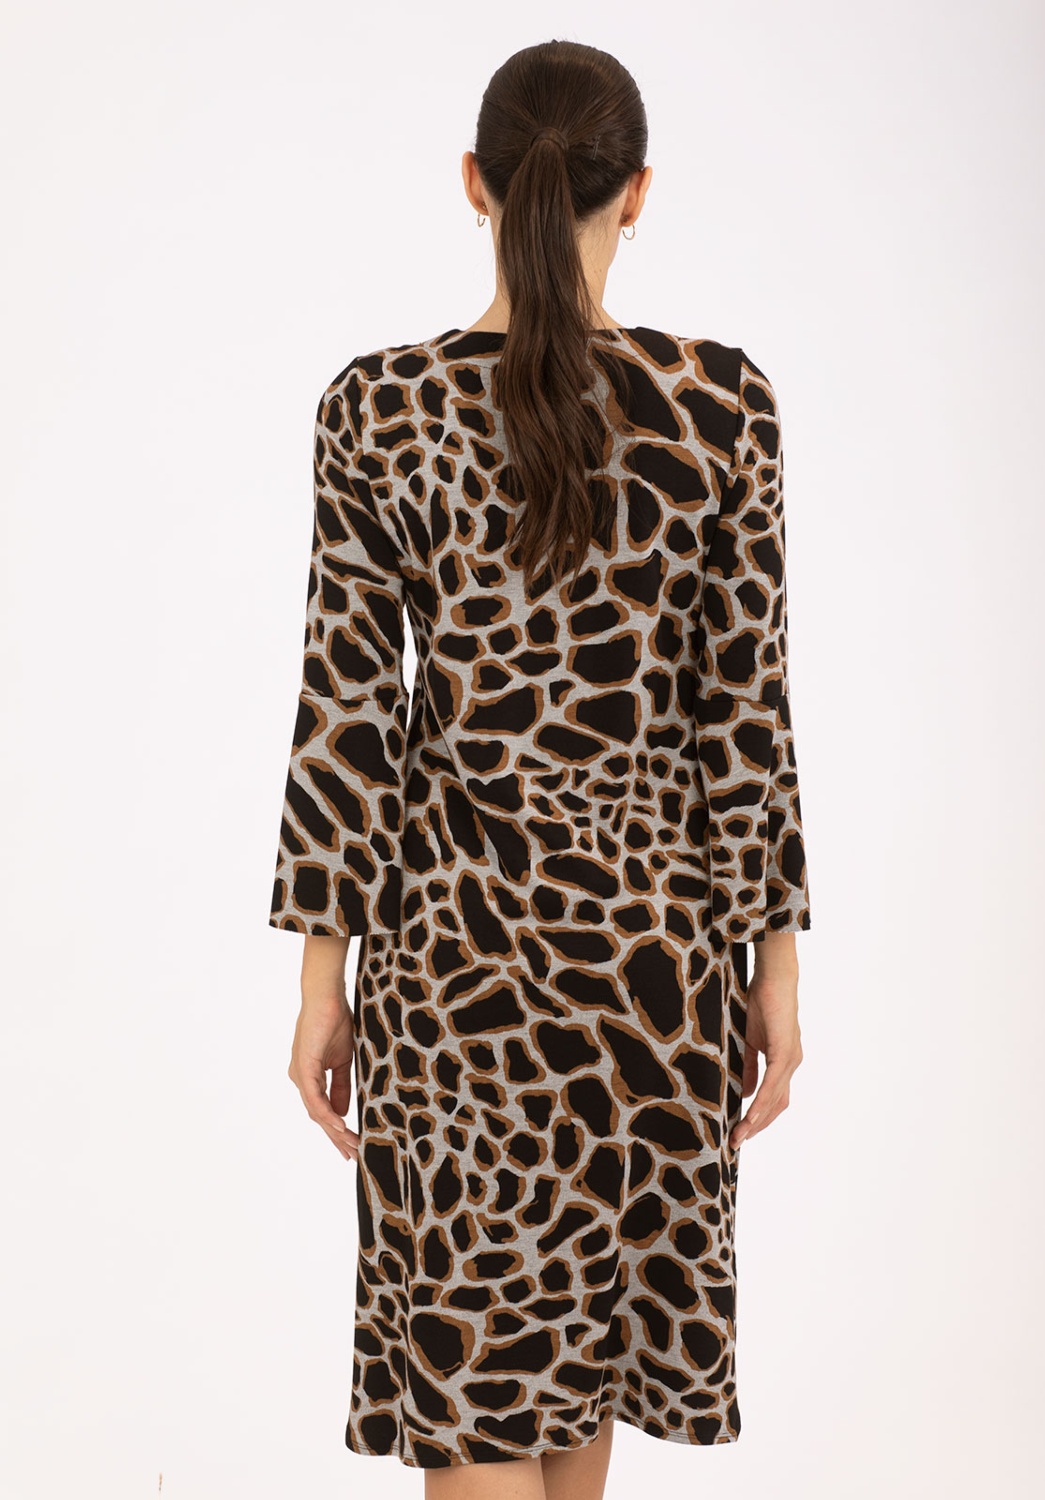 Giraffe Print Dress 2